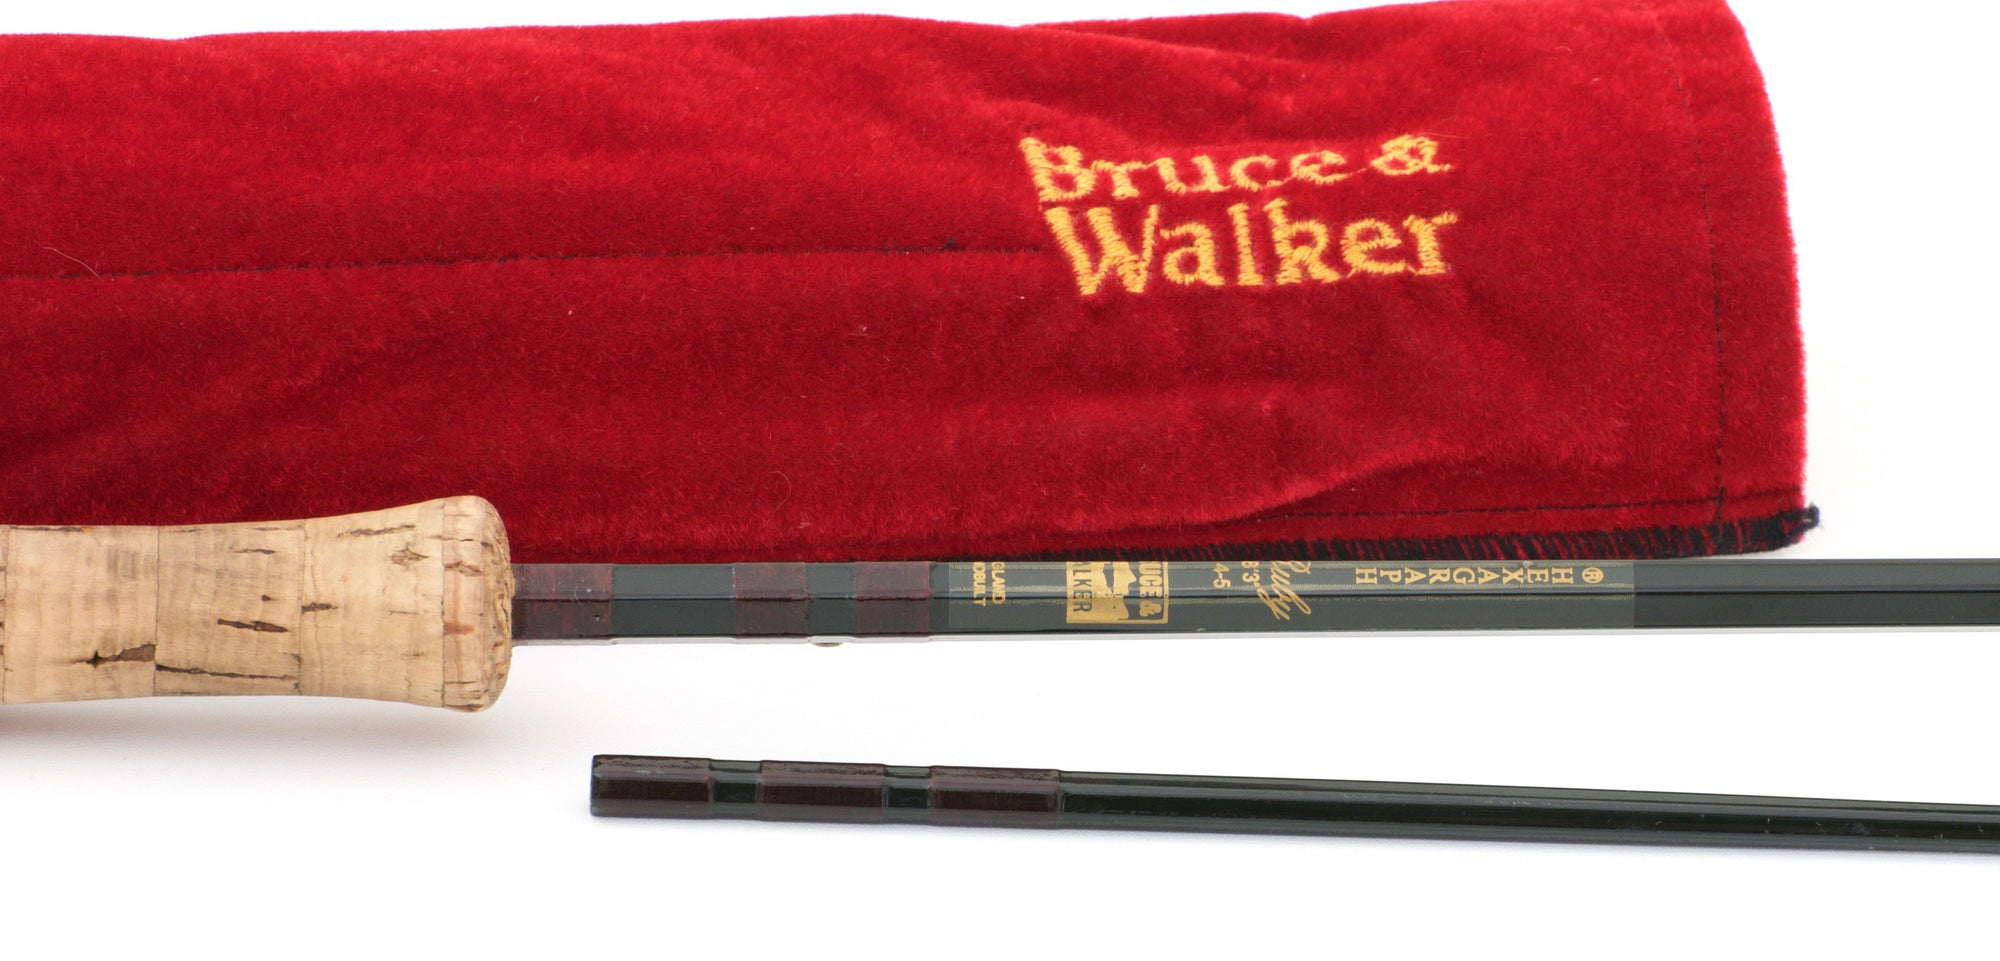 Bruce & Walker - Ruby 8'3 4-5wt Hexagraph Rod 